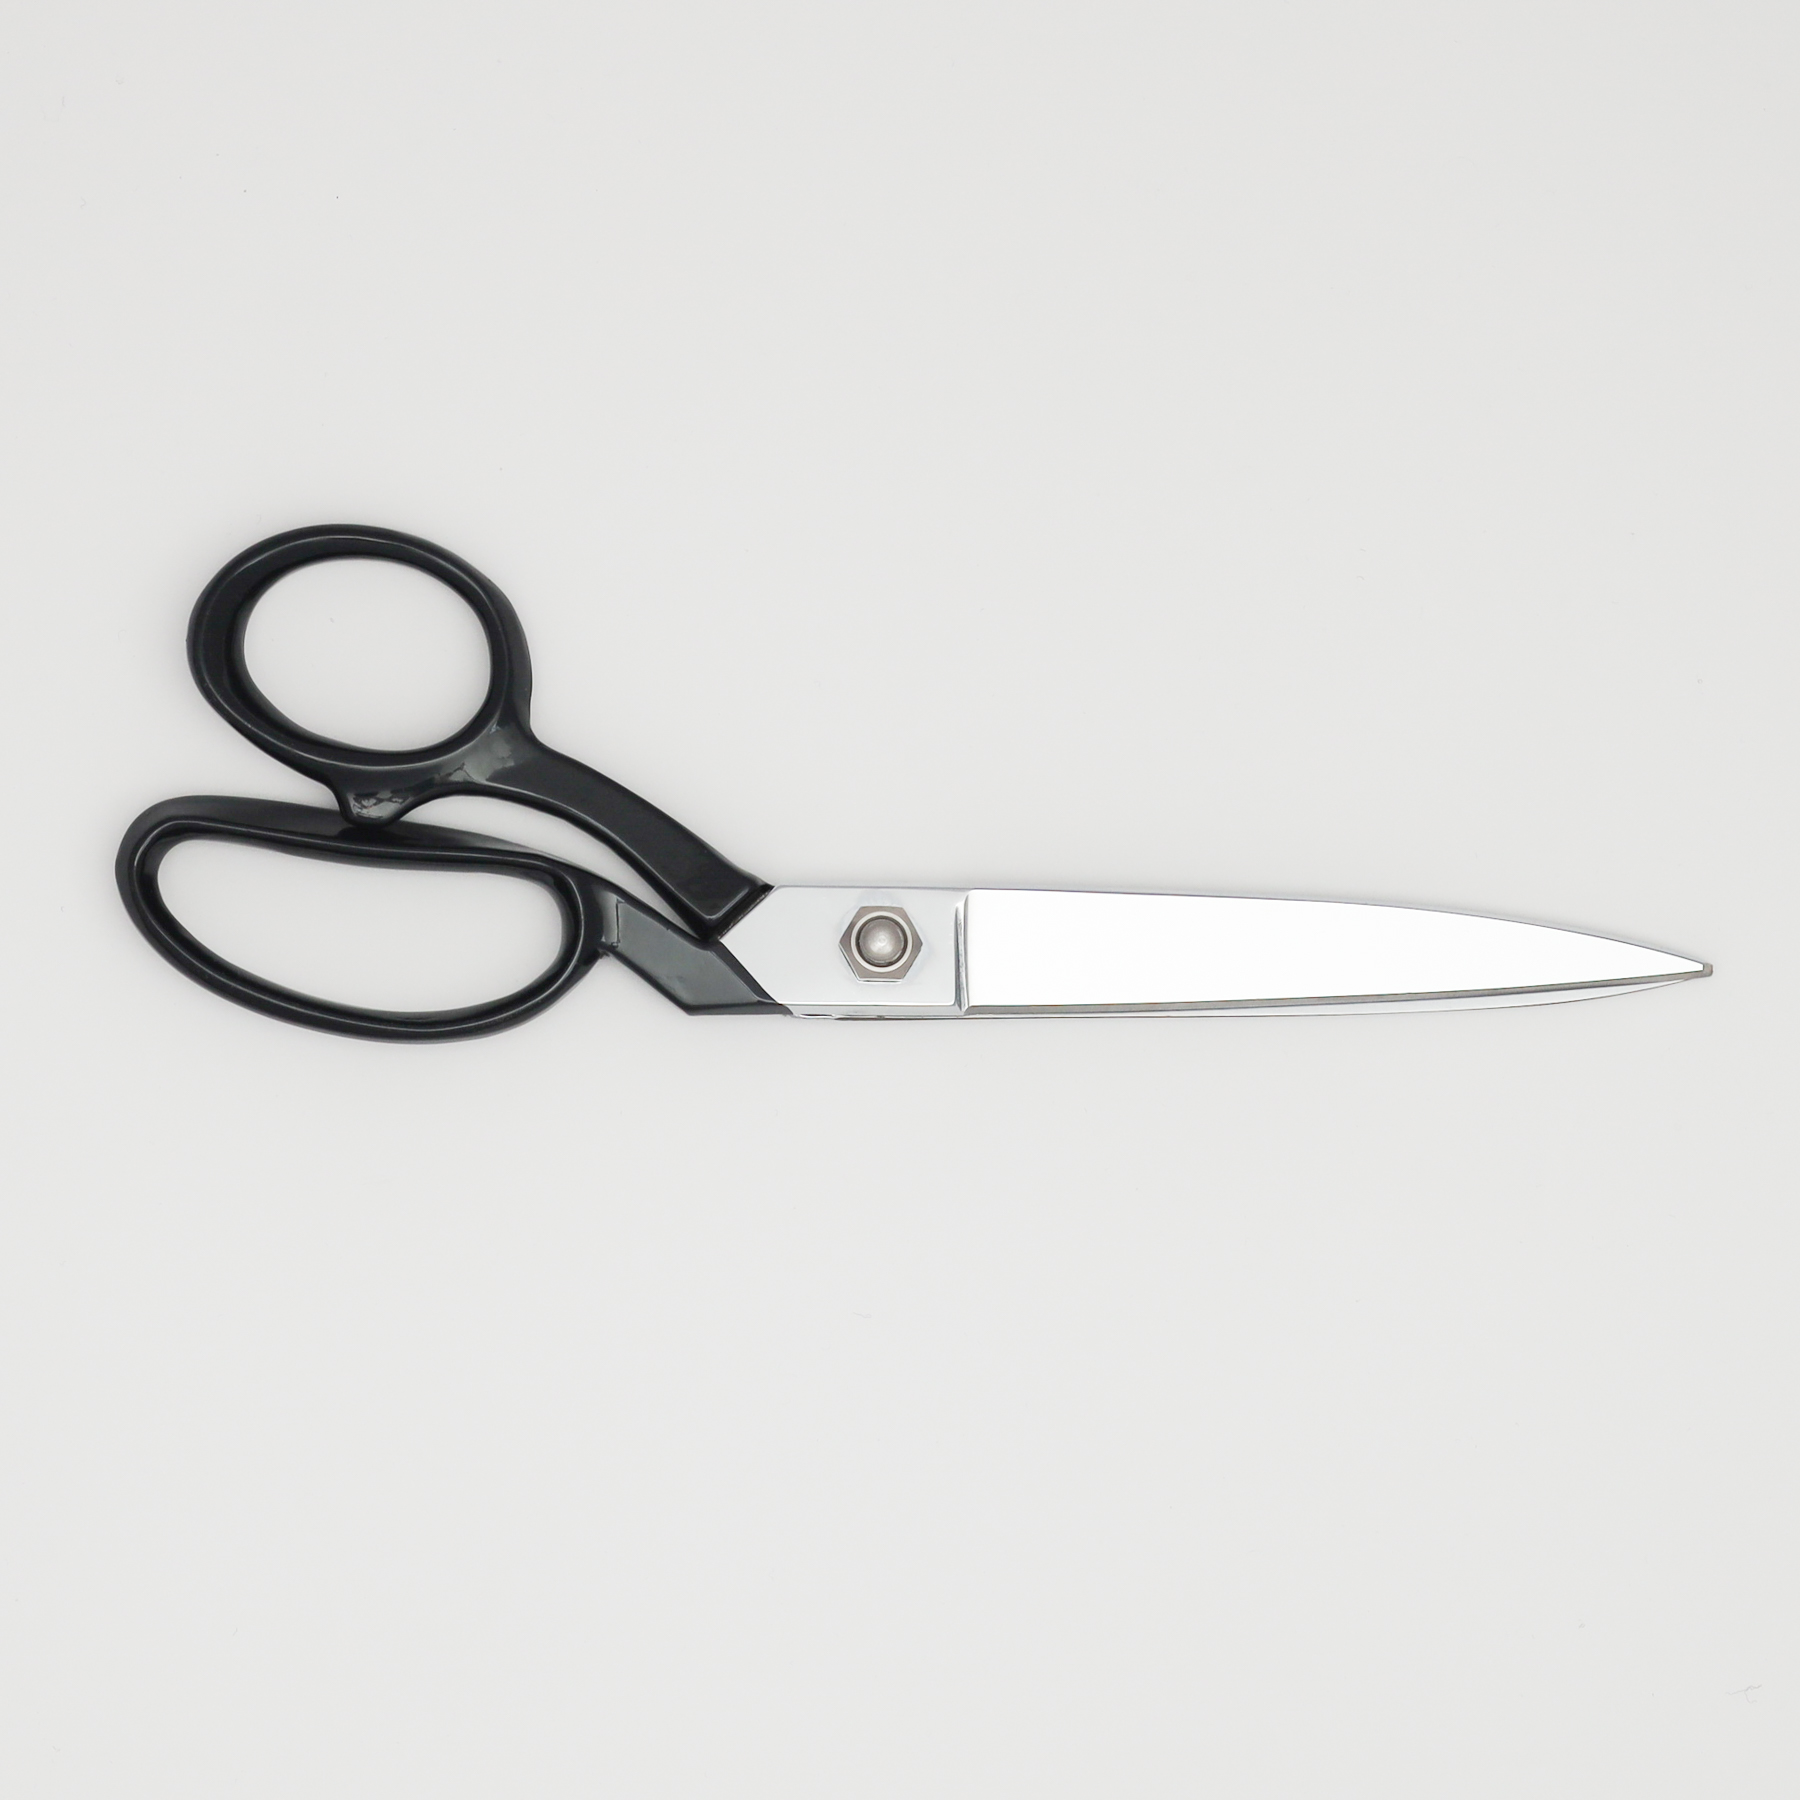 Tailor’s 10″ Scissors